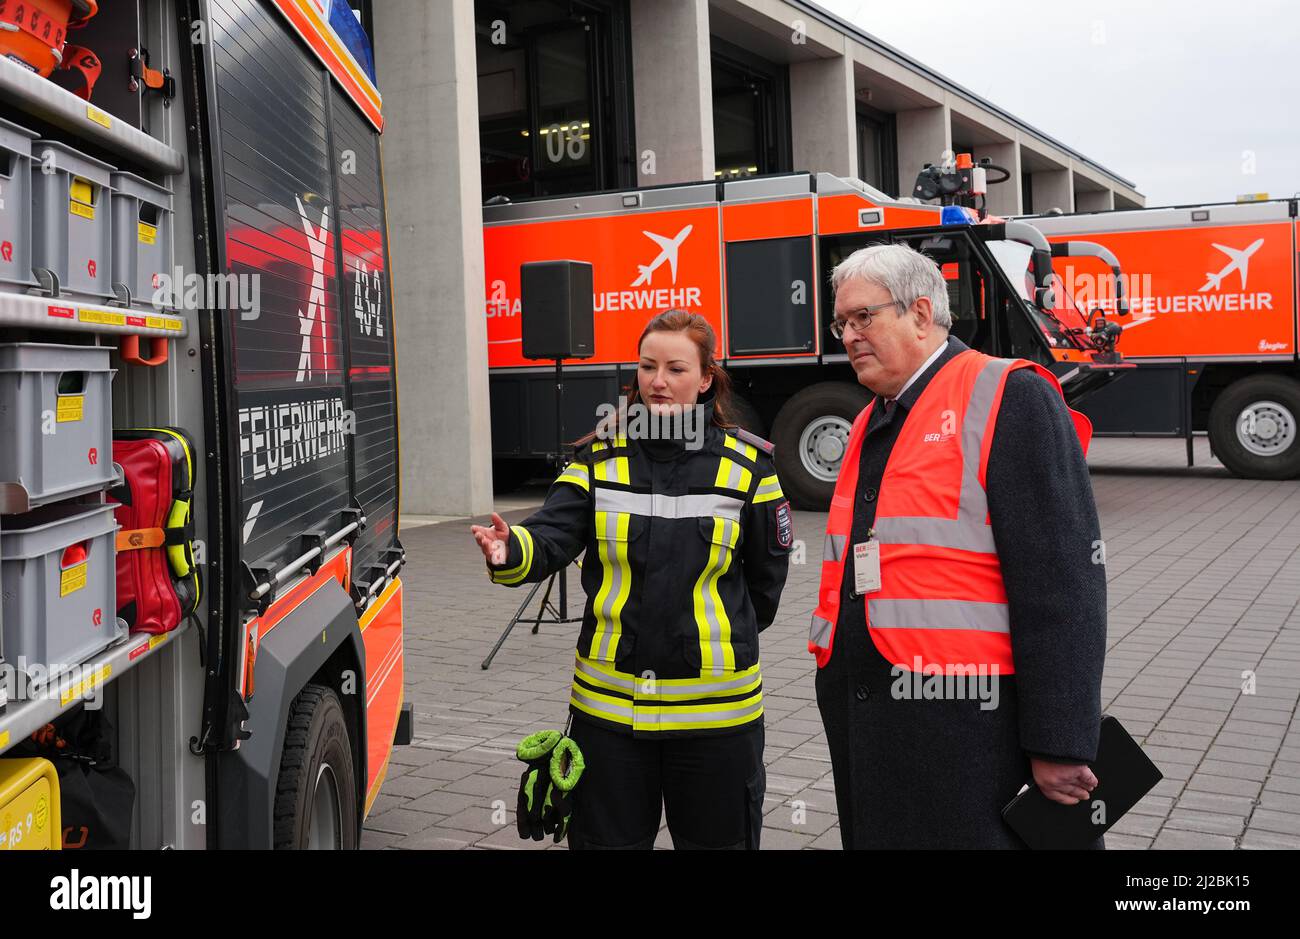 31 marzo 2022, Berlino, Schönefeld: Annika Bogdain, tirocinante presso il Dipartimento dei vigili del fuoco dell'aeroporto di Berlino Brandeburgo "Willy Brandt", spiega un veicolo di gruppo antincendio ausiliario (HLF) a Jörg Steinbach (SPD), ministro dell'economia, del lavoro e dell'energia di Brandeburgo, durante un evento stampa per segnare l'inizio della formazione presso il dipartimento dei vigili del fuoco dell'aeroporto. Il veicolo differisce da un normale camion dei pompieri per il fatto che dispone di attrezzature più estese per l'assistenza tecnica. A partire da agosto 2022, il reparto antincendio del sito BER offrirà corsi di formazione per i vigili del fuoco. All'inizio devono essere occupate sei posizioni apprendisti. P Foto Stock